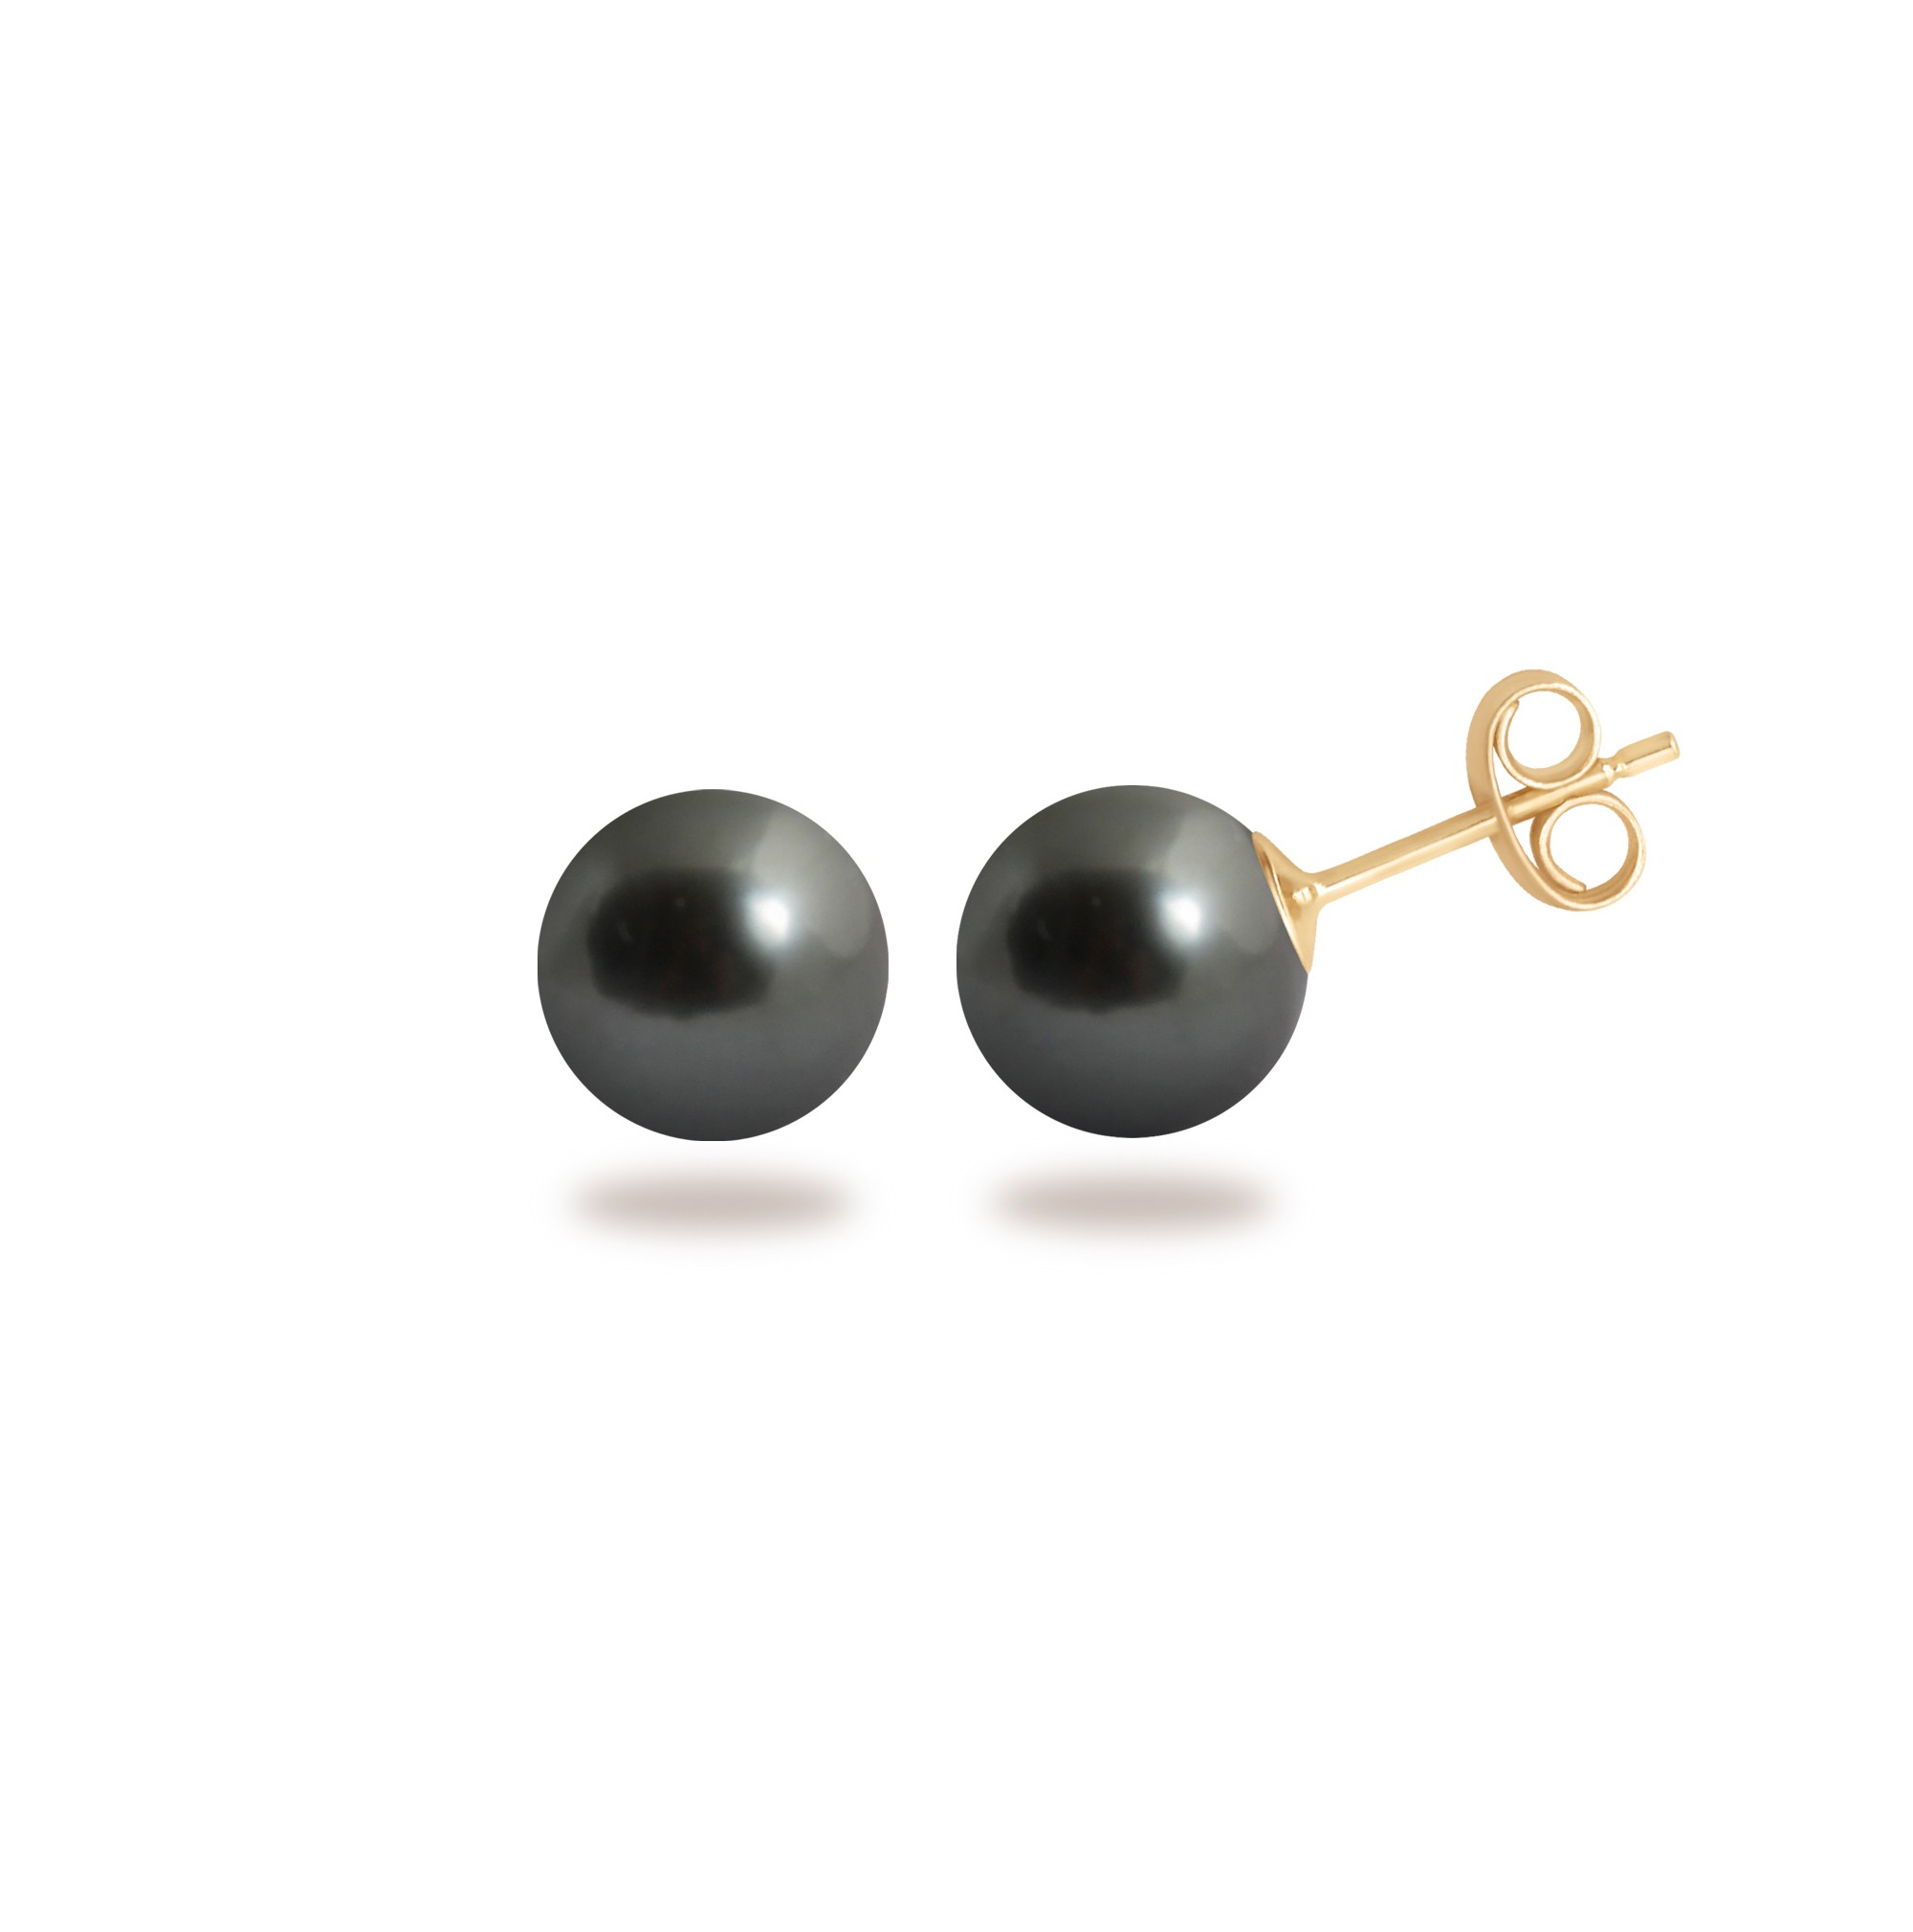 Puces 7/9 mm perles noires - Claverin